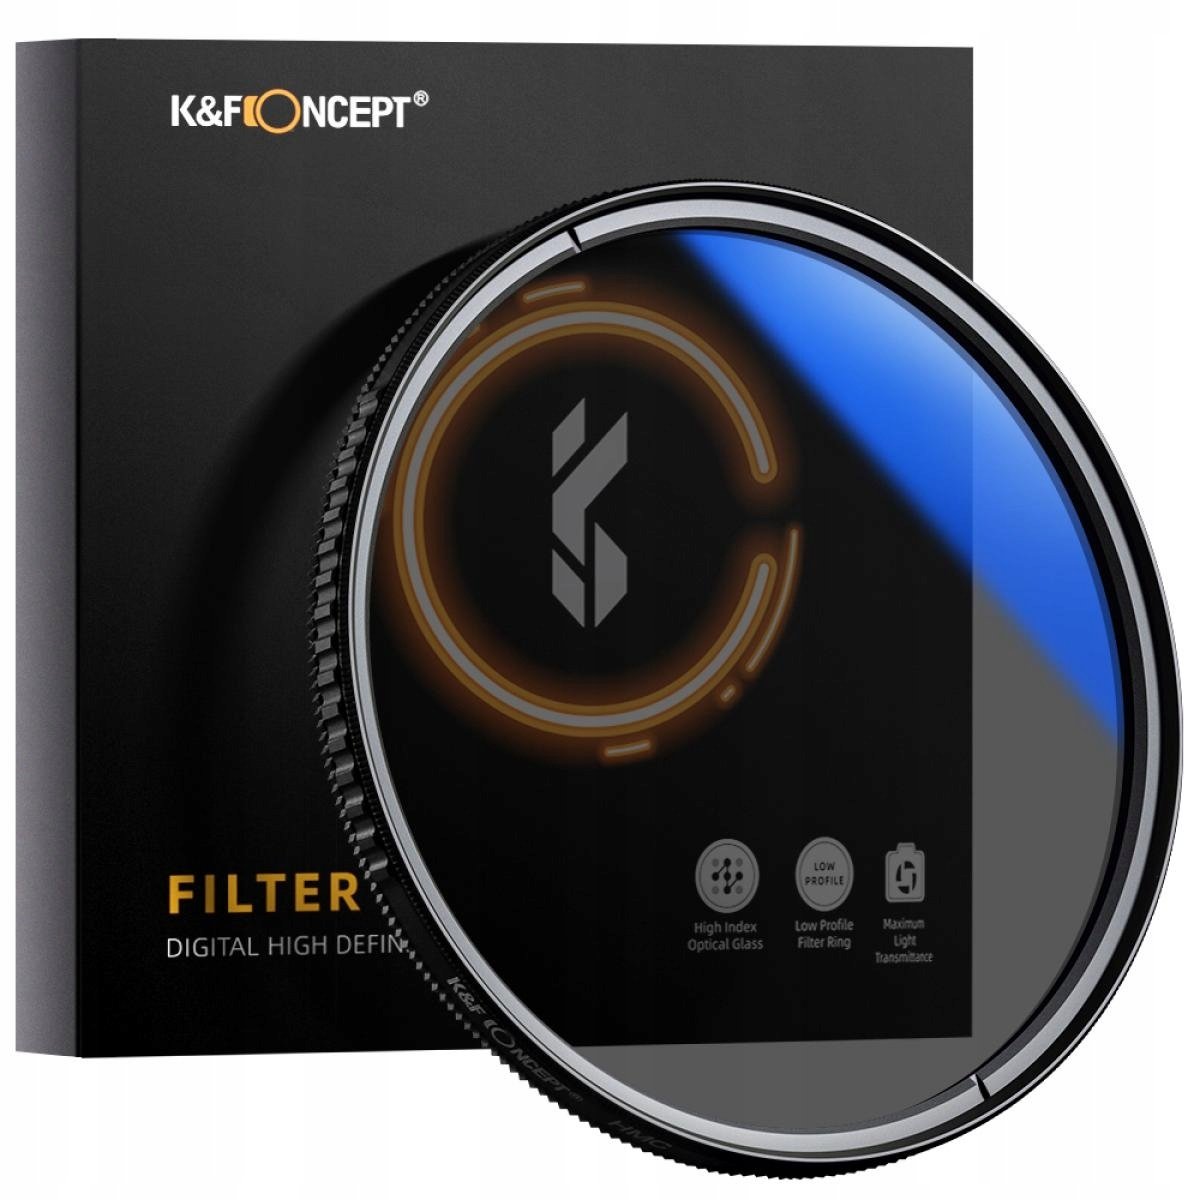 K&F CONCEPT Filtr K&F CONCEPT KF01.1442 82 mm) | Bezpłatny transport | Raty